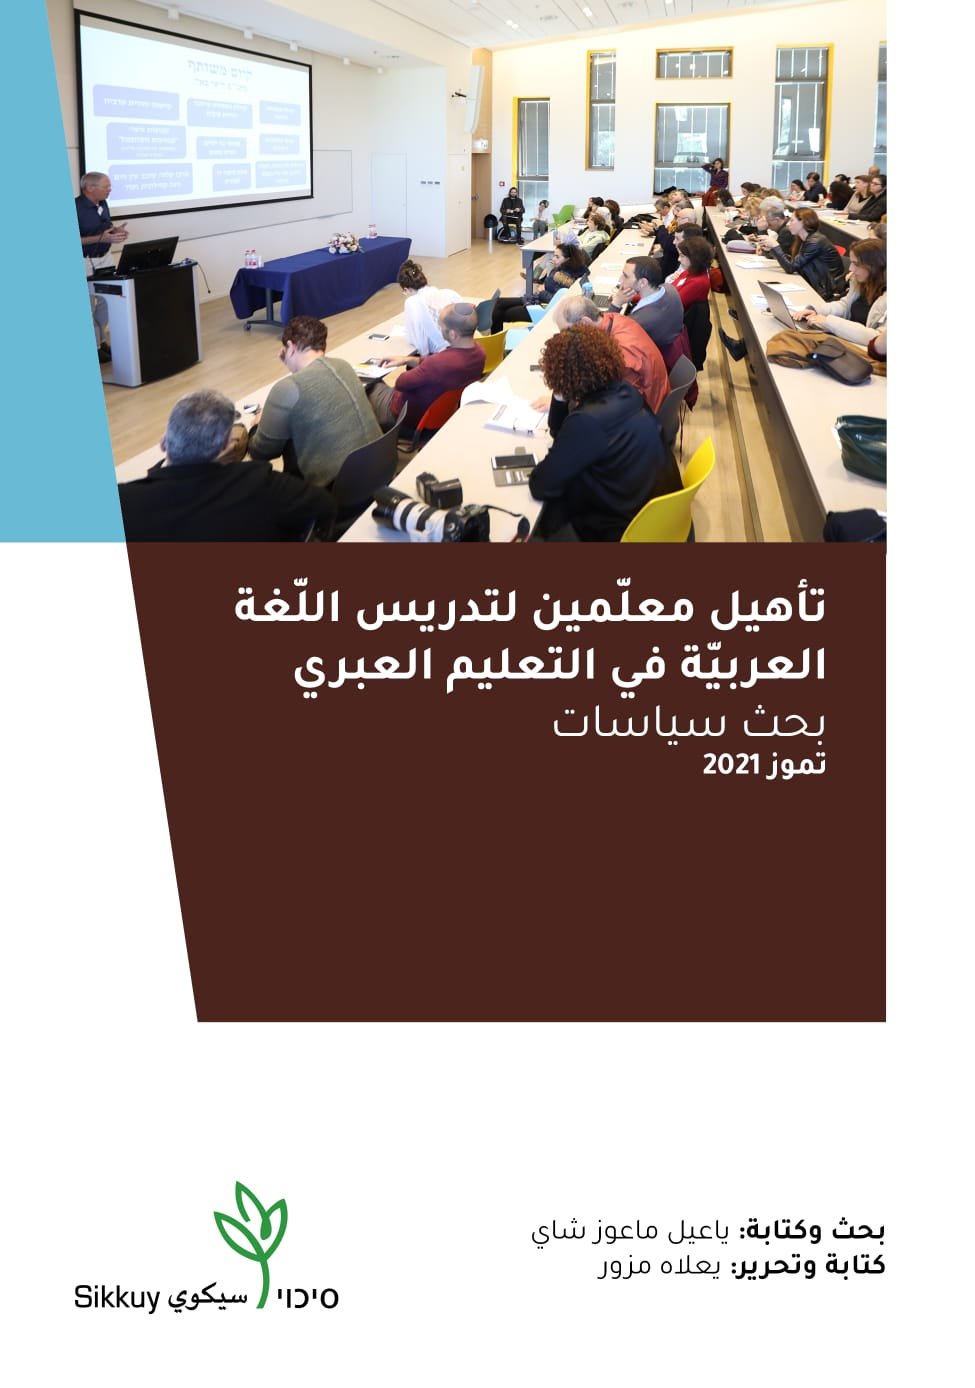 سيكويّ: على وزارة التربية والتعليم ان تدرّس العربية كلغة المكان والسكان المحليّة وليس كأيّ لغة أجنبية!-0